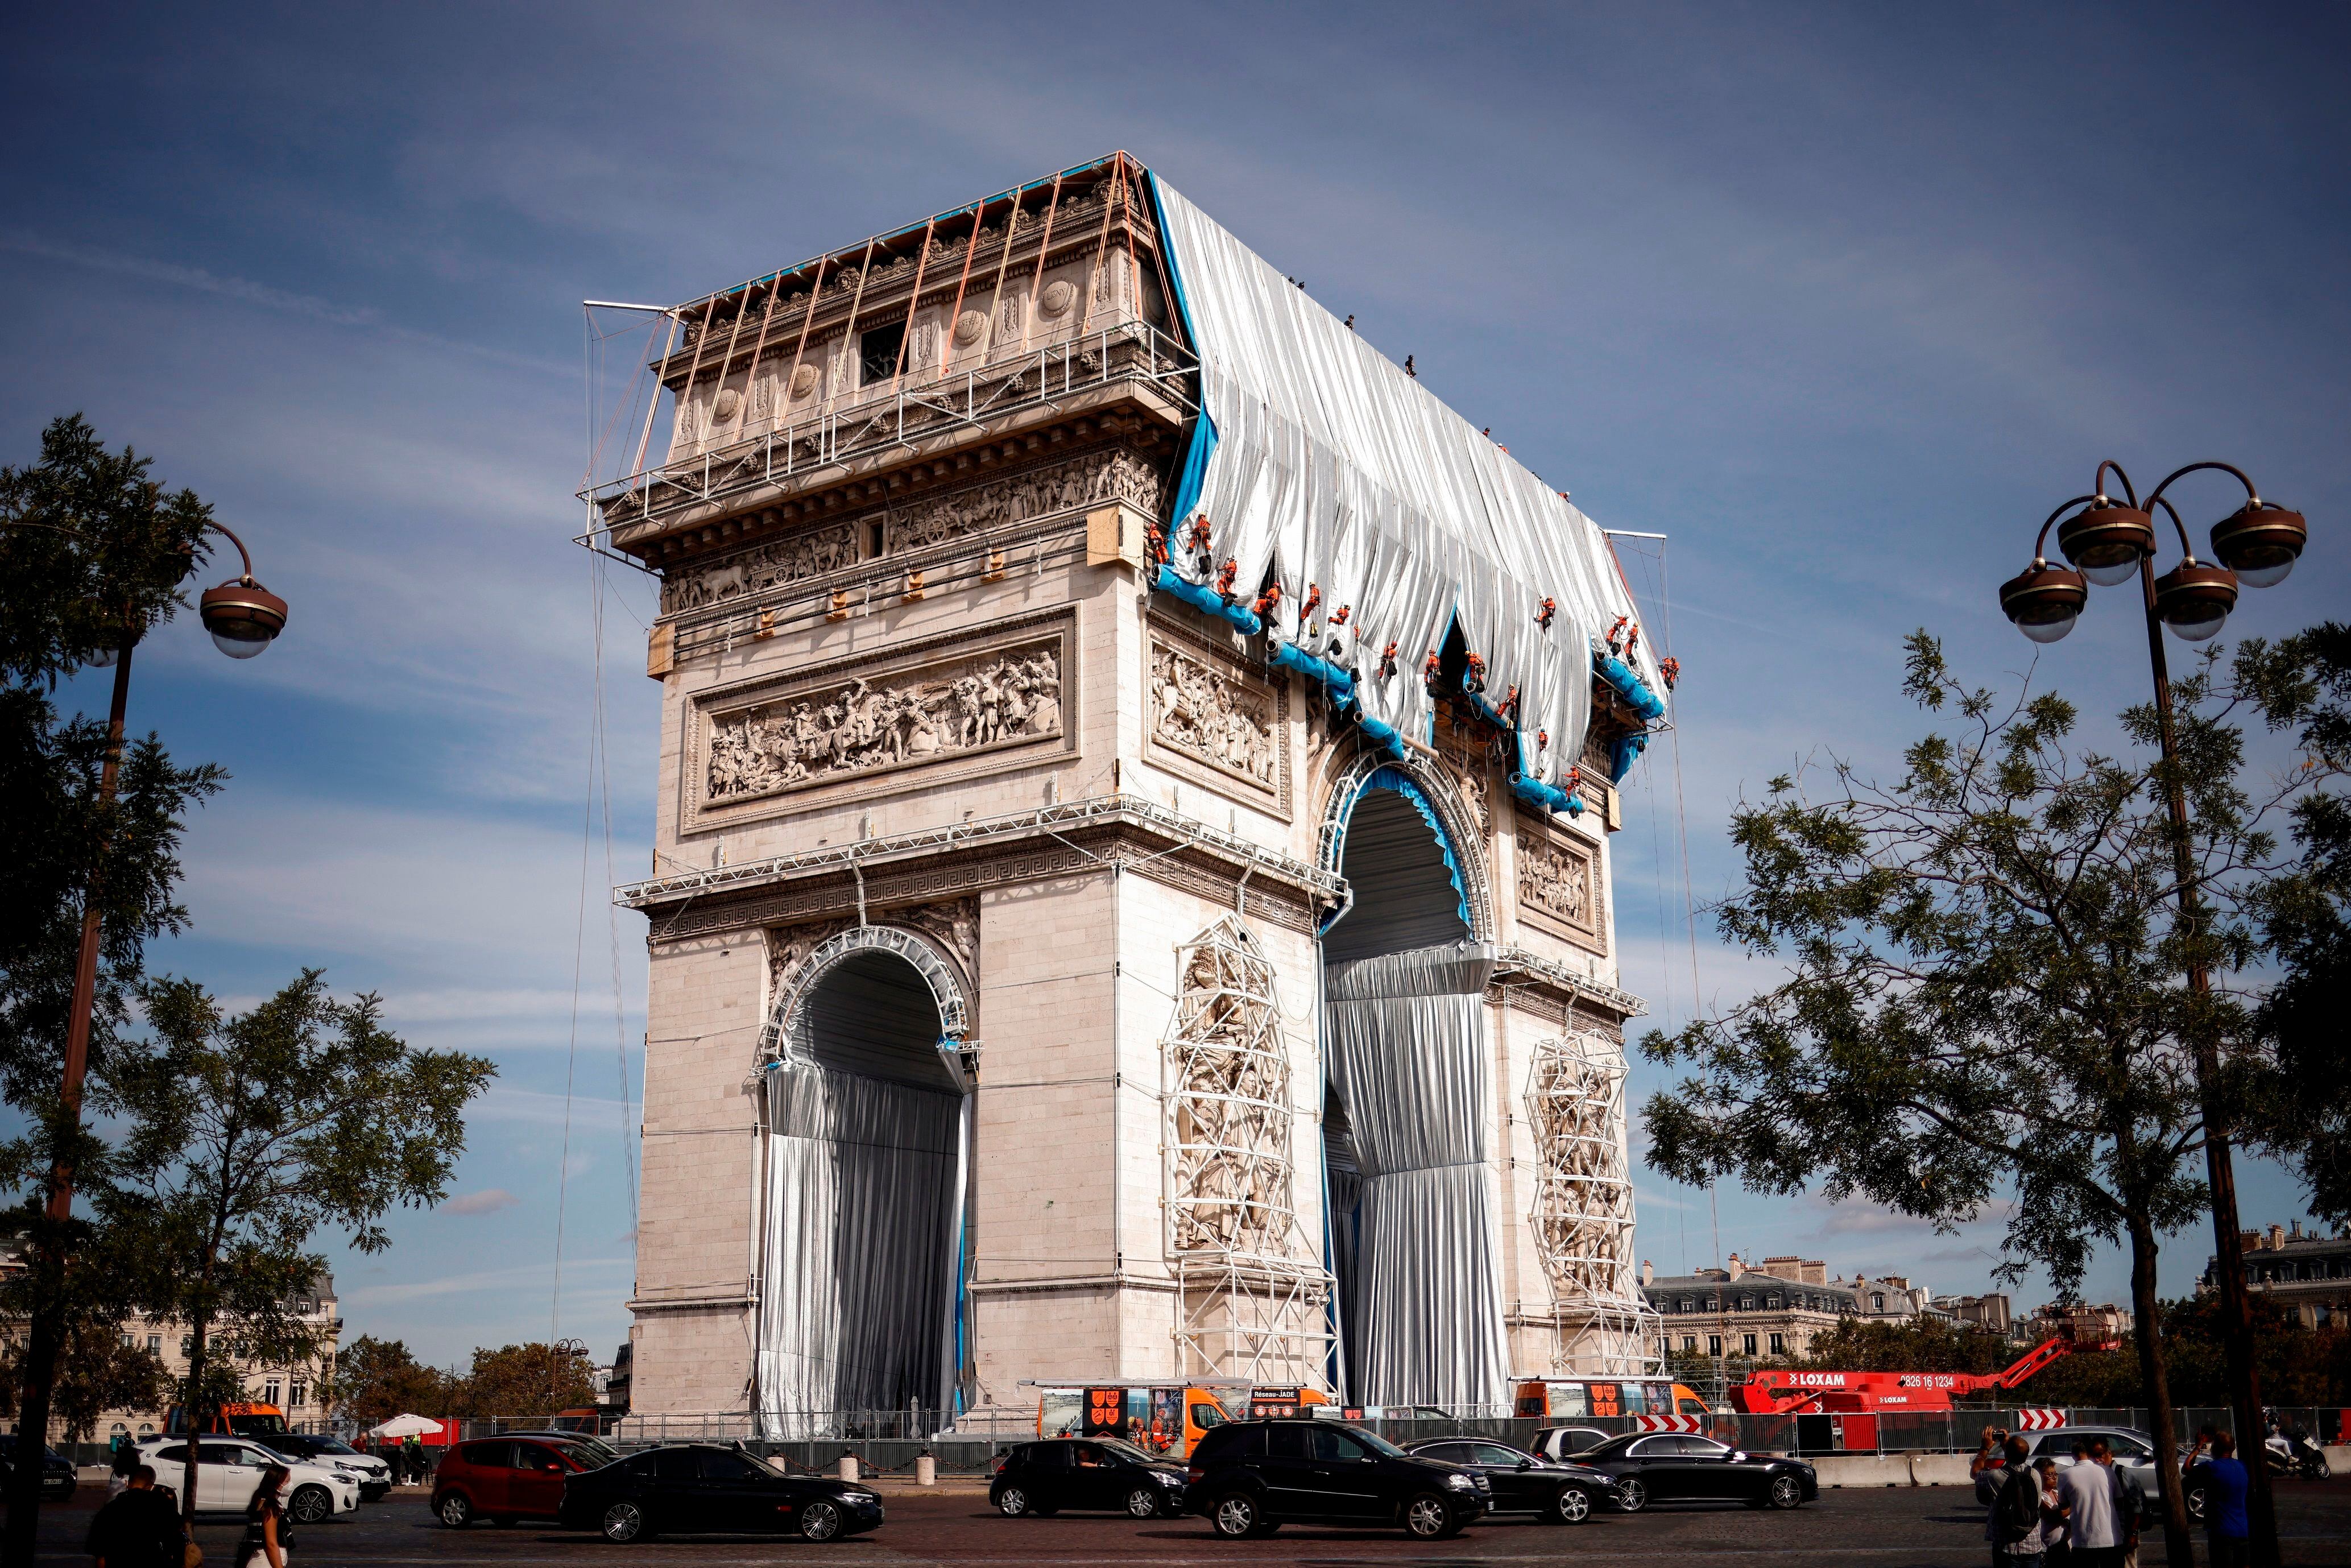 La monumental instalación envolverá el emblemático monumento parisino bajo una tela plateada y azul de 25.000 metros cuadrados.